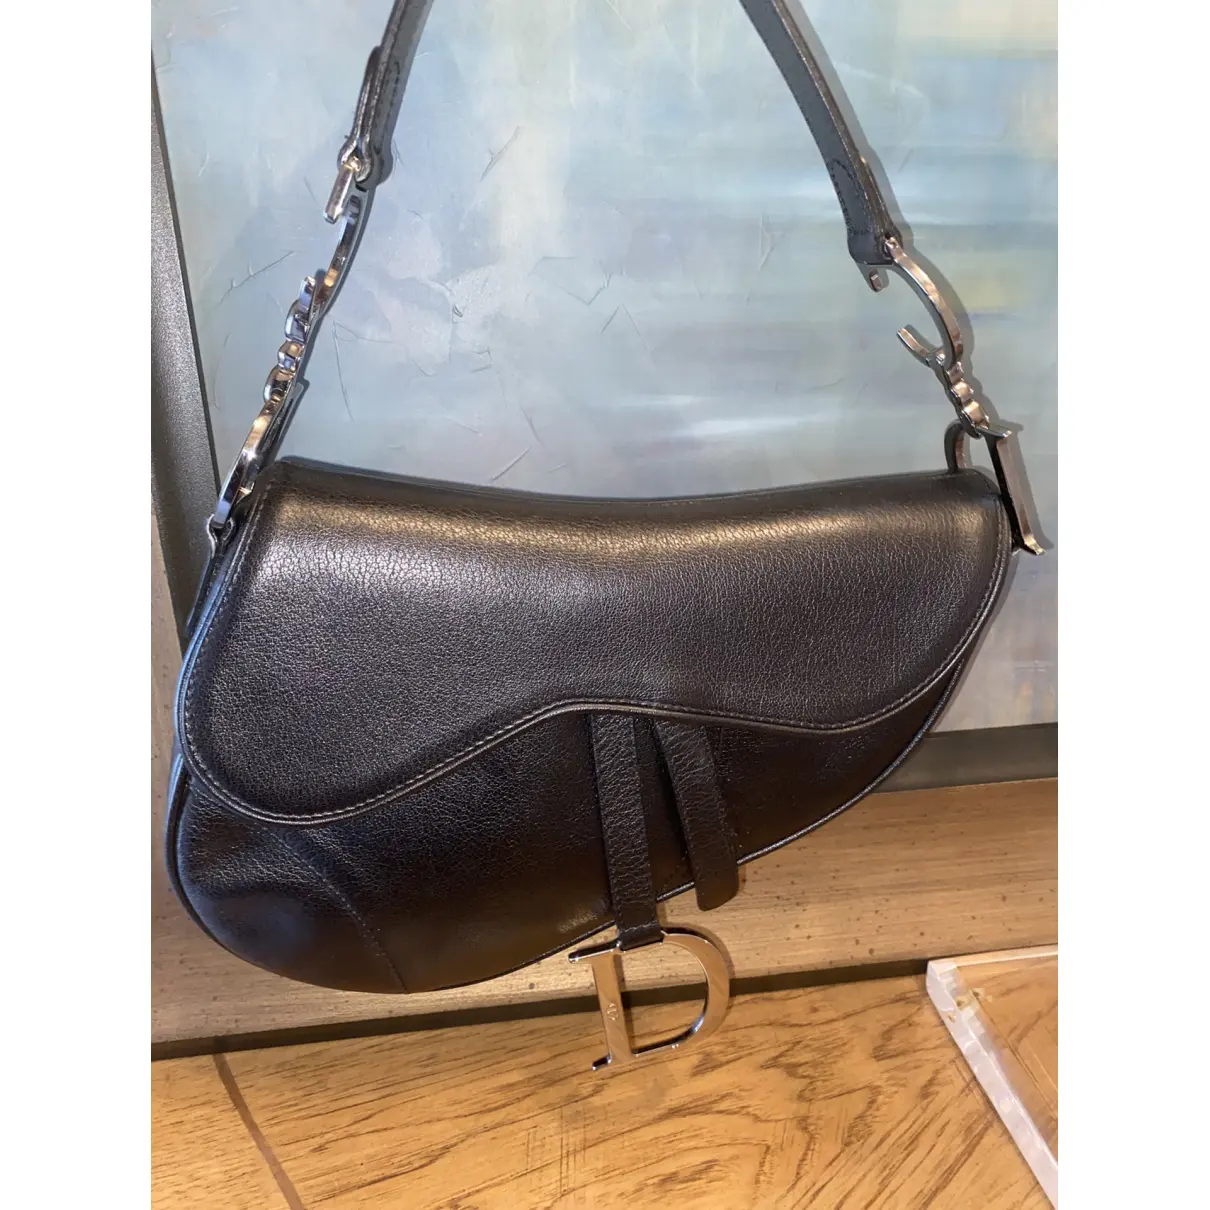 Buy Dior Saddle leather handbag online - Vintage